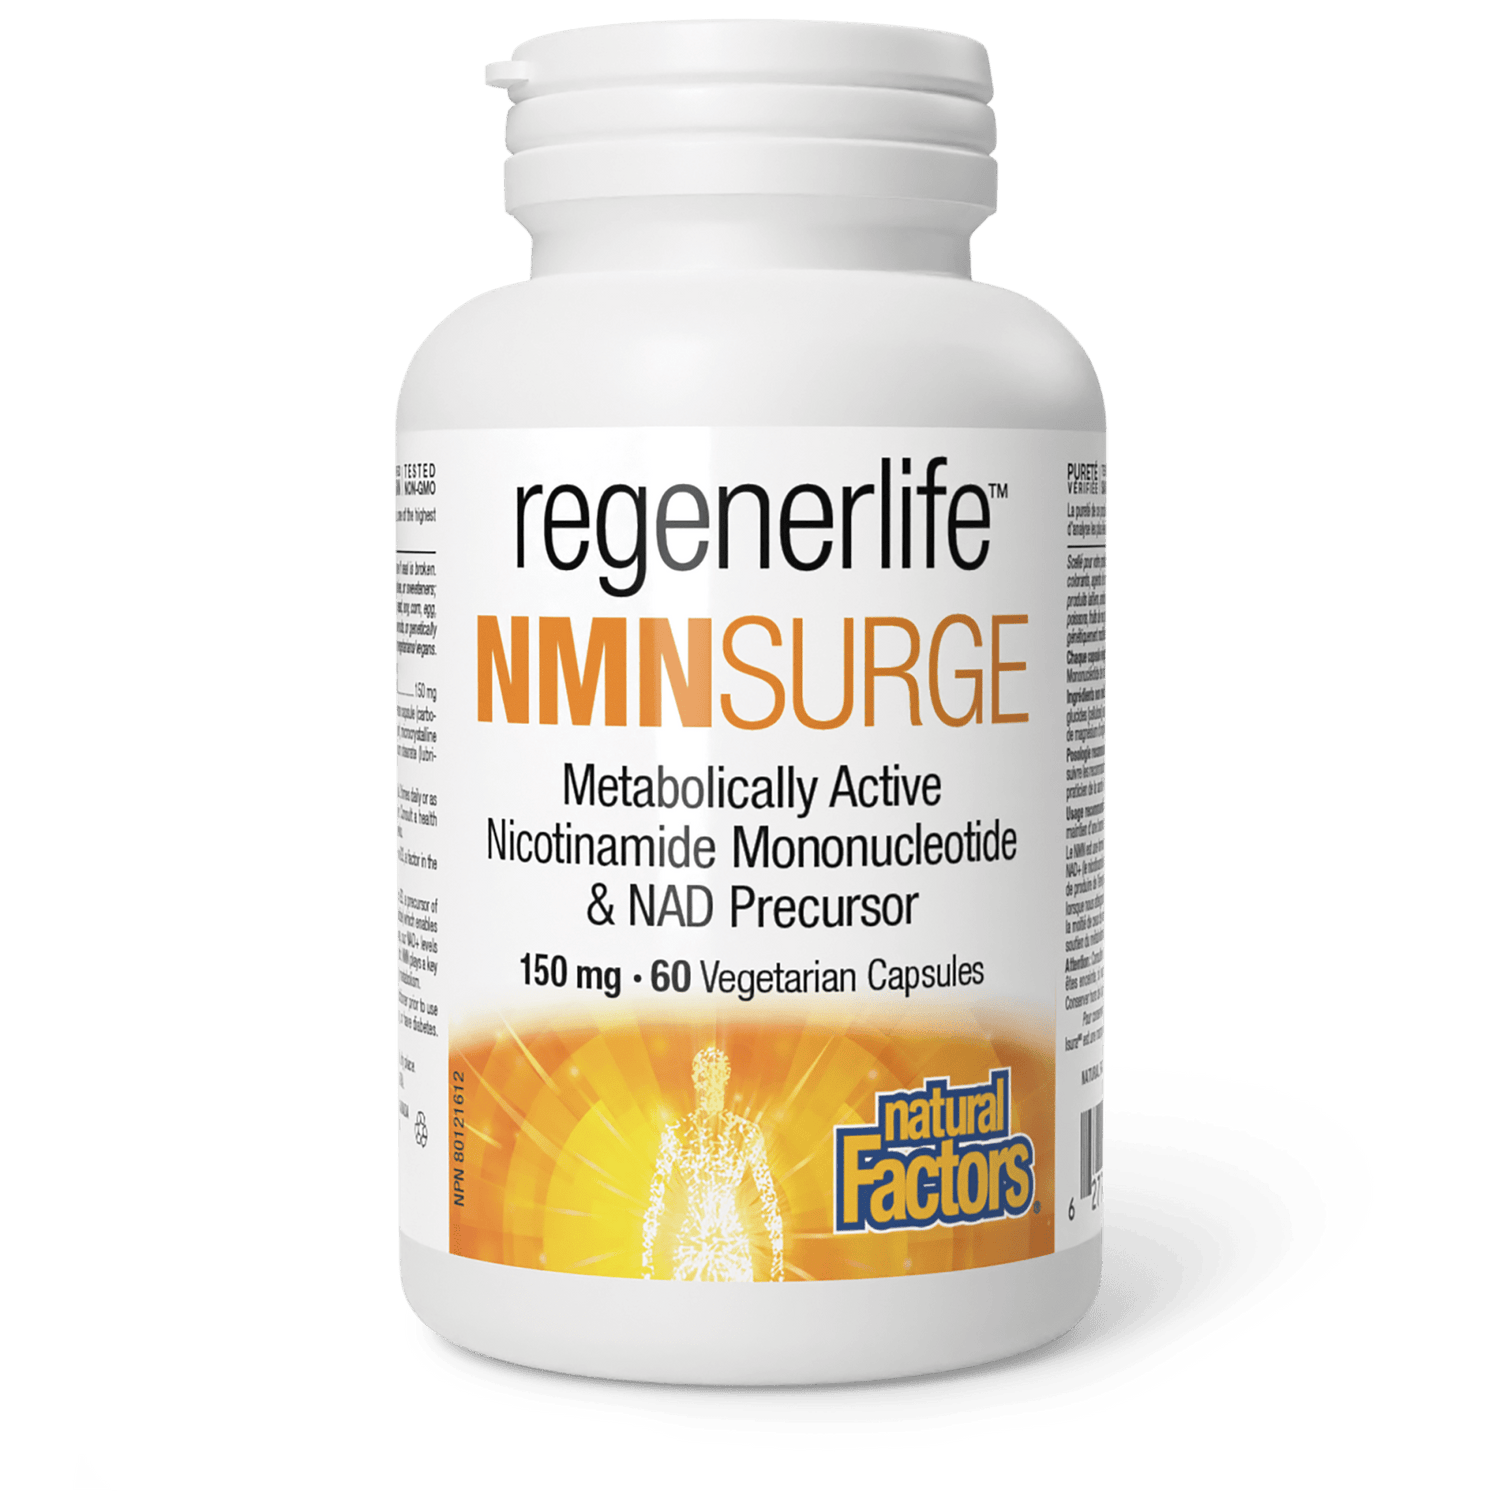 NMNSurge, Regenerlife, Natural Factors|v|image|1904